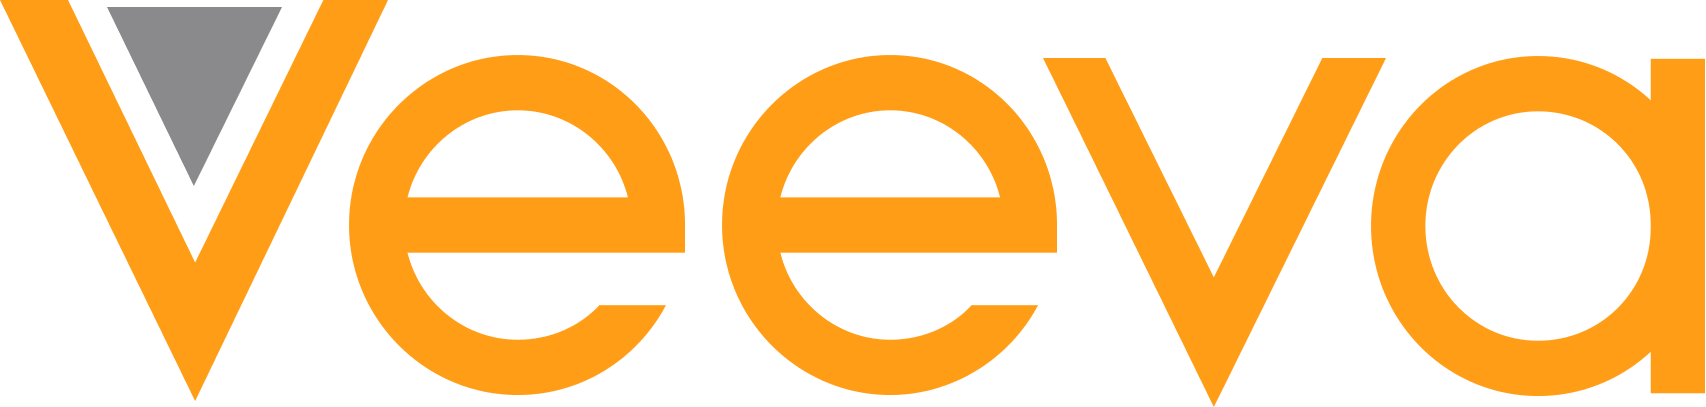 Veeva Systems company logo